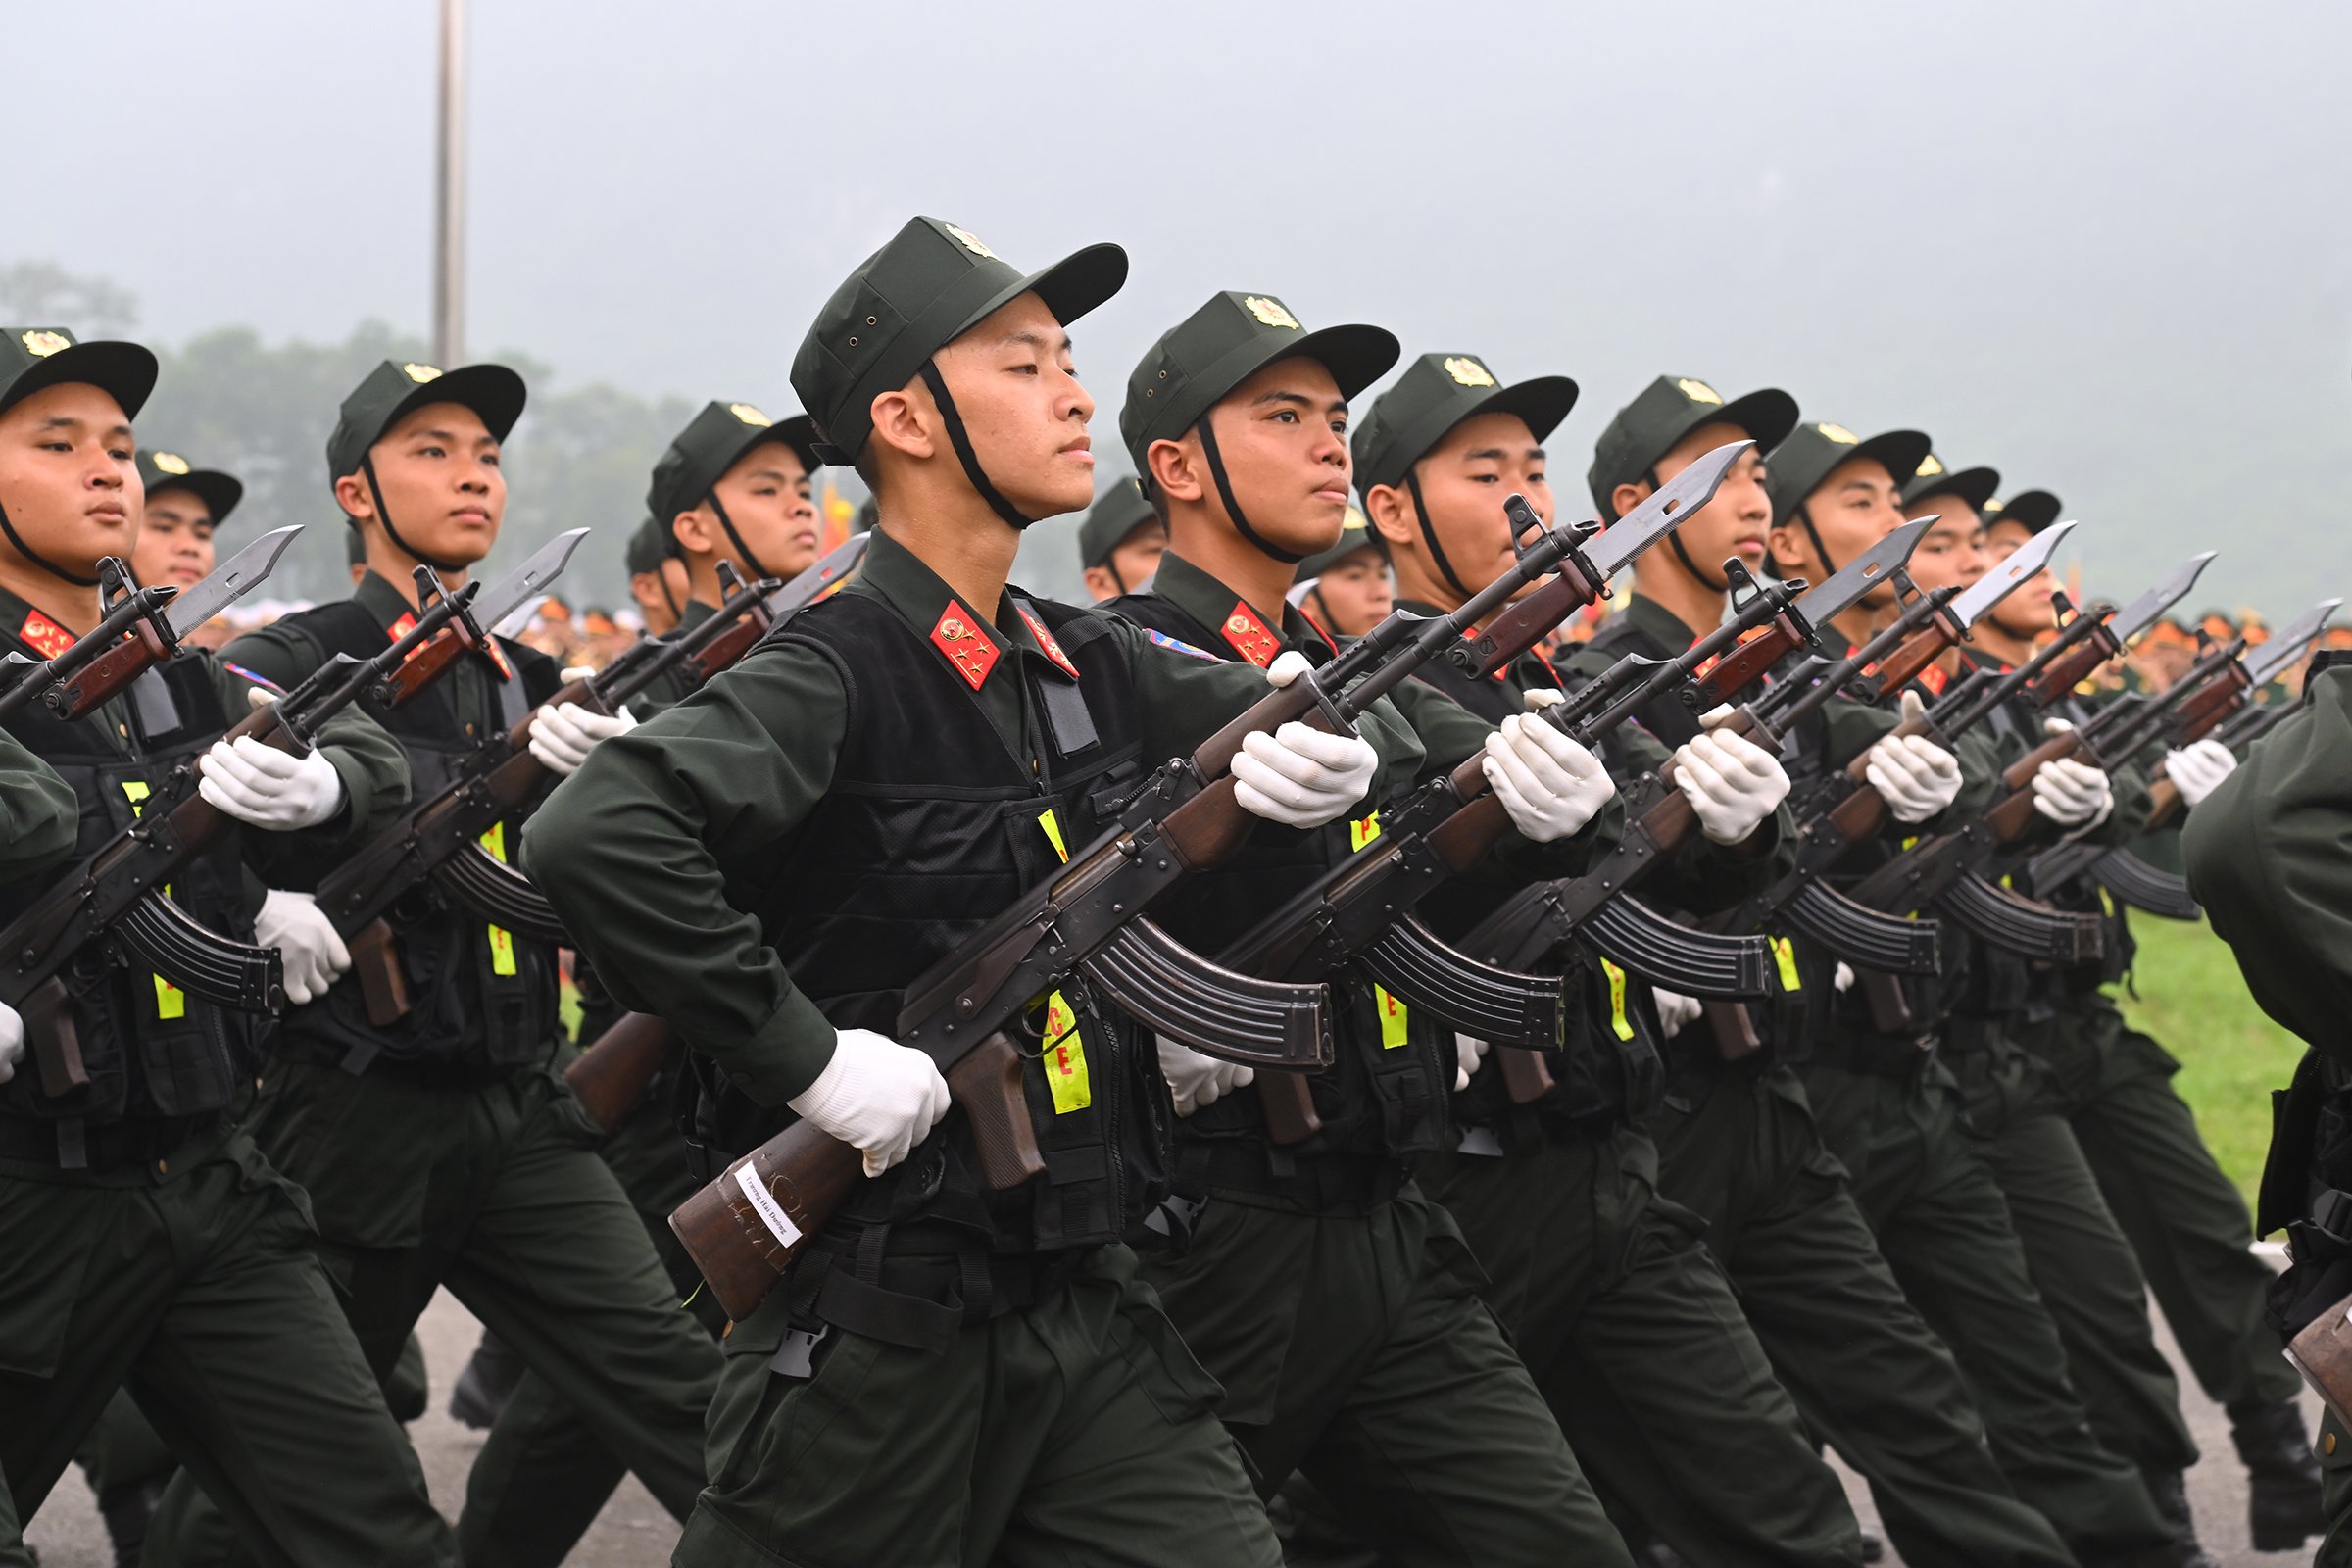 Lễ diễu binh oai hùng và đầy tự hào của 12.000 người - những hình ảnh đi vào lịch sử ở Điện Biên Phủ- Ảnh 47.